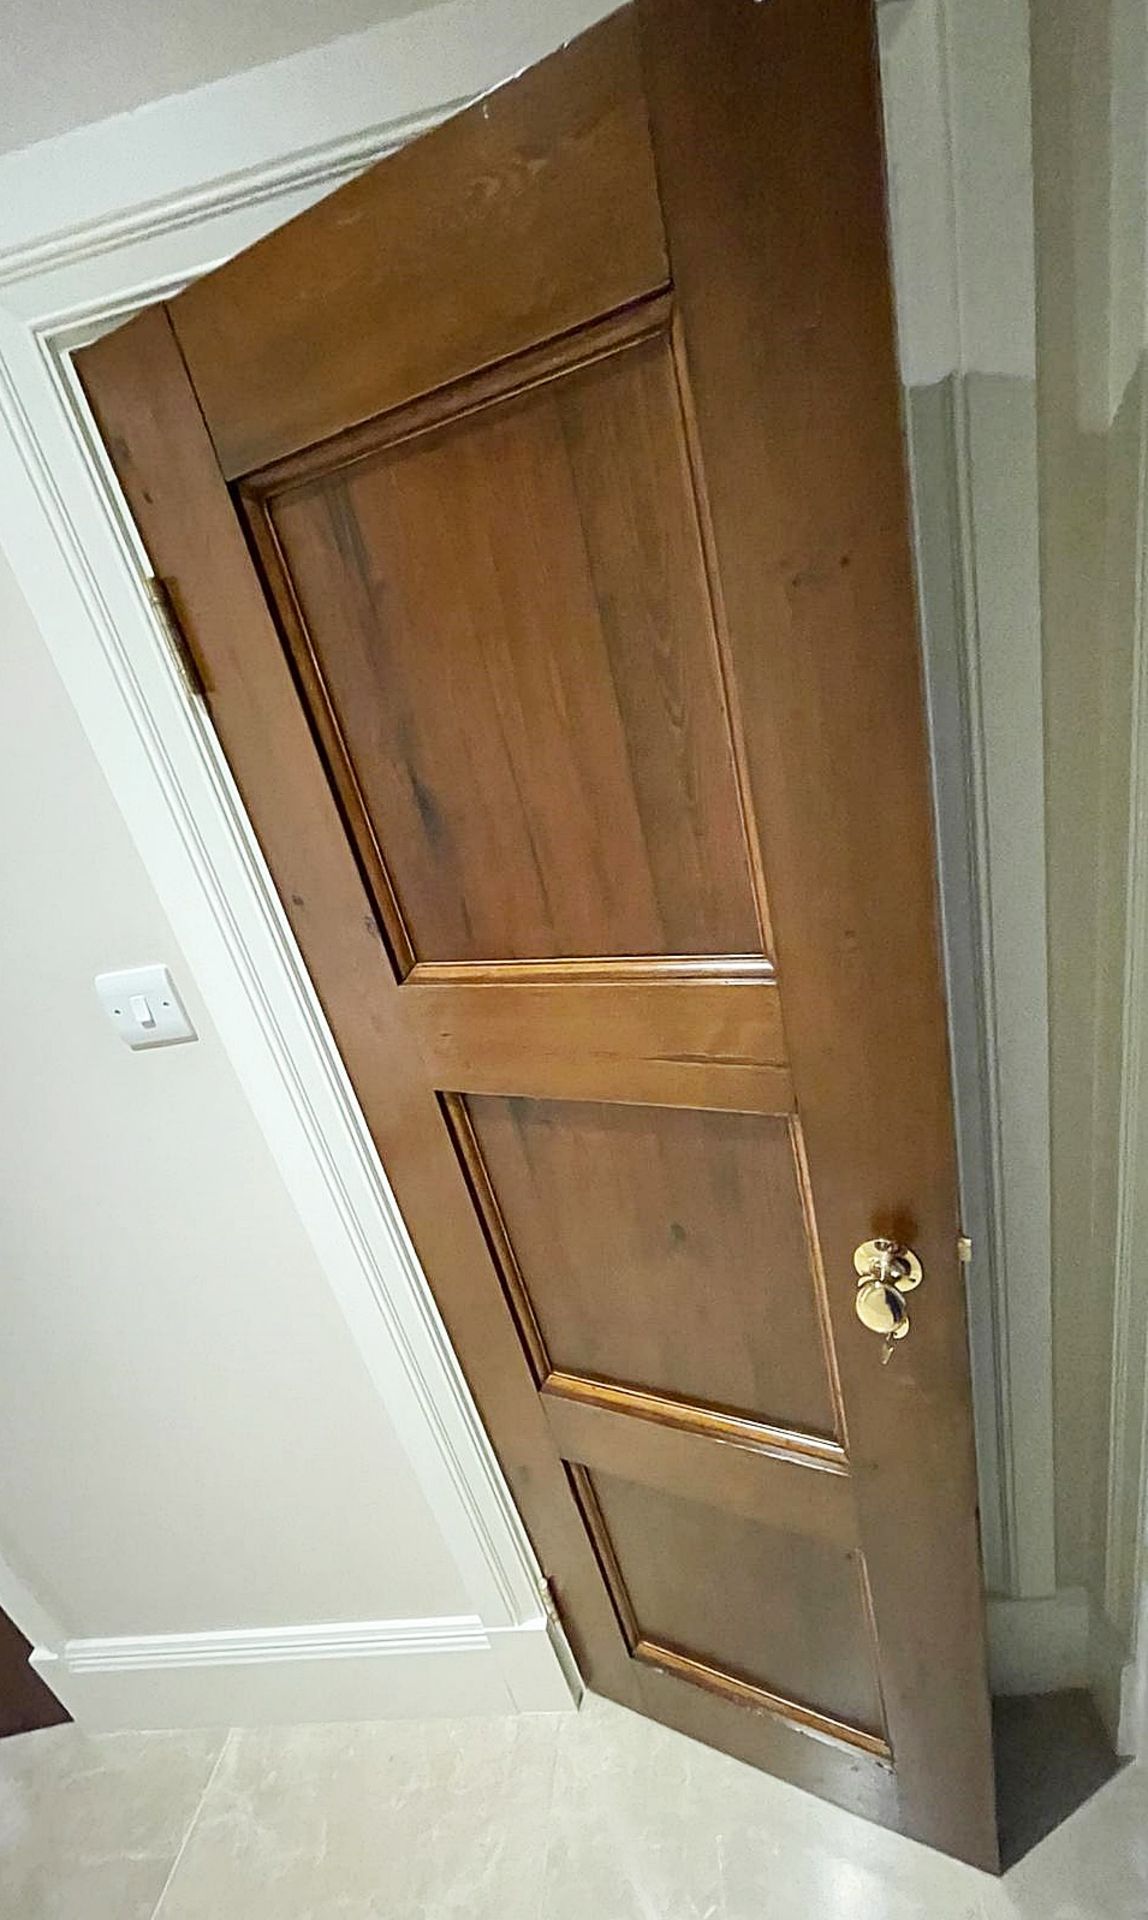 1 x Solid Wood Slim Lockable Internal Door - Ref: PAN129 / UNDSTRS - CL896 - NO VAT ON THE - Image 4 of 5